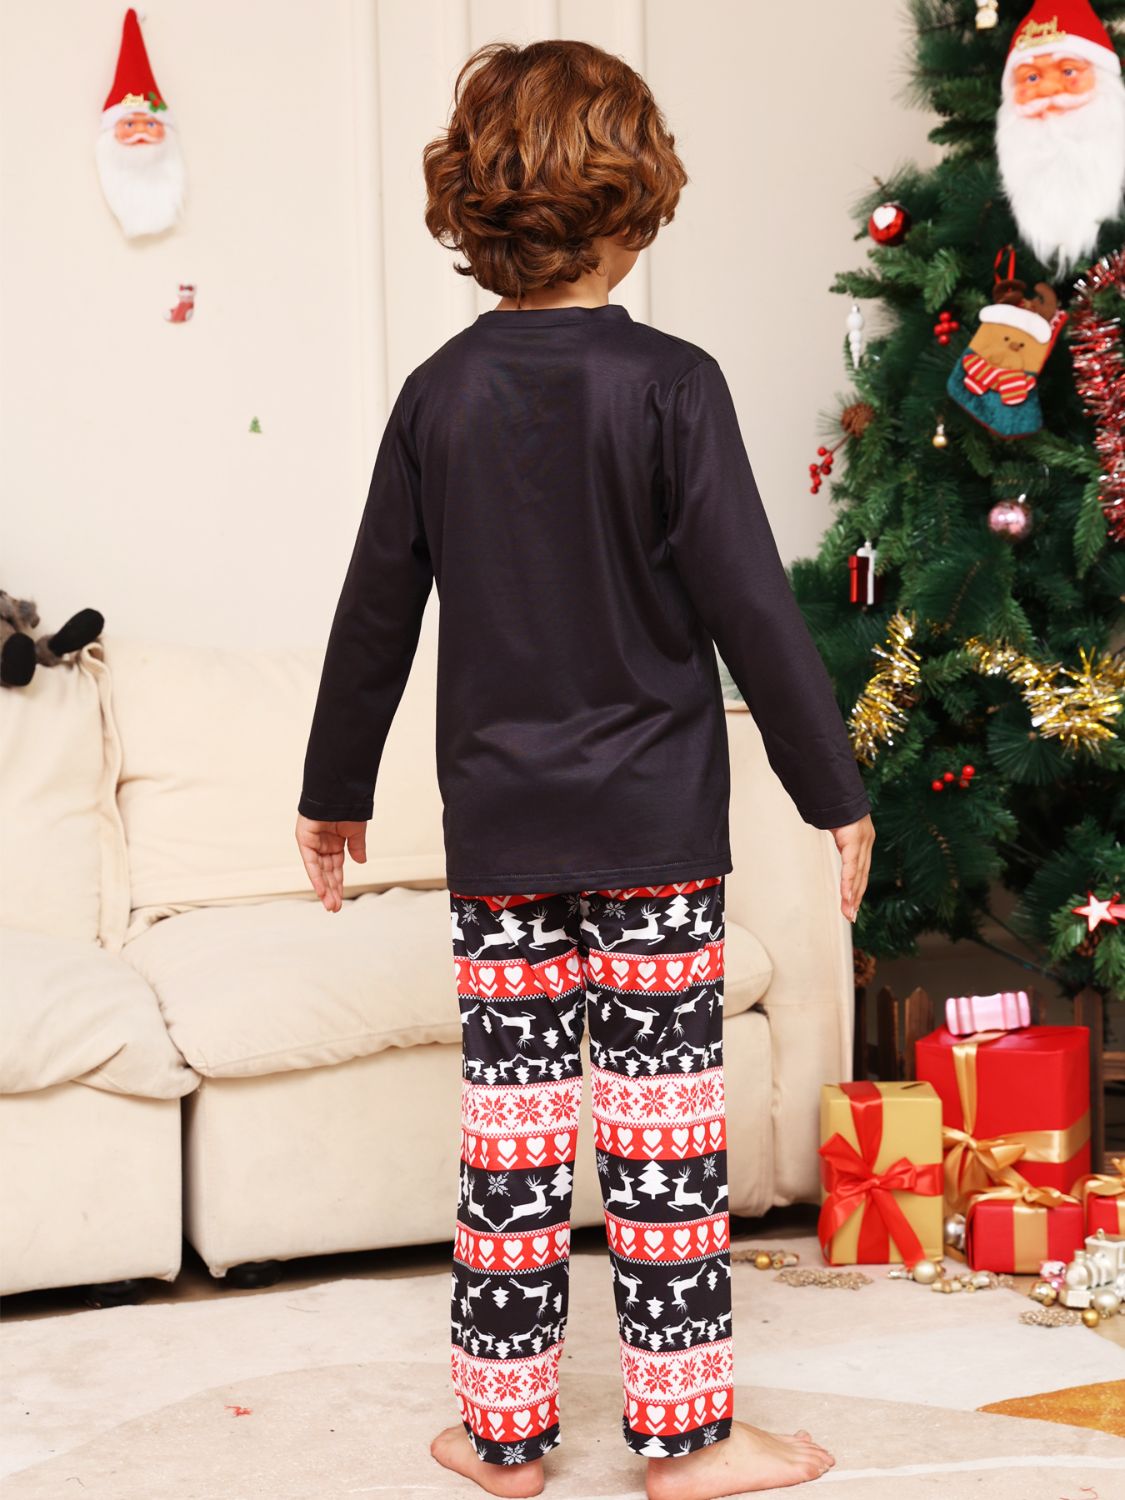 Merry Christmas Top & Pants Set | Kid's